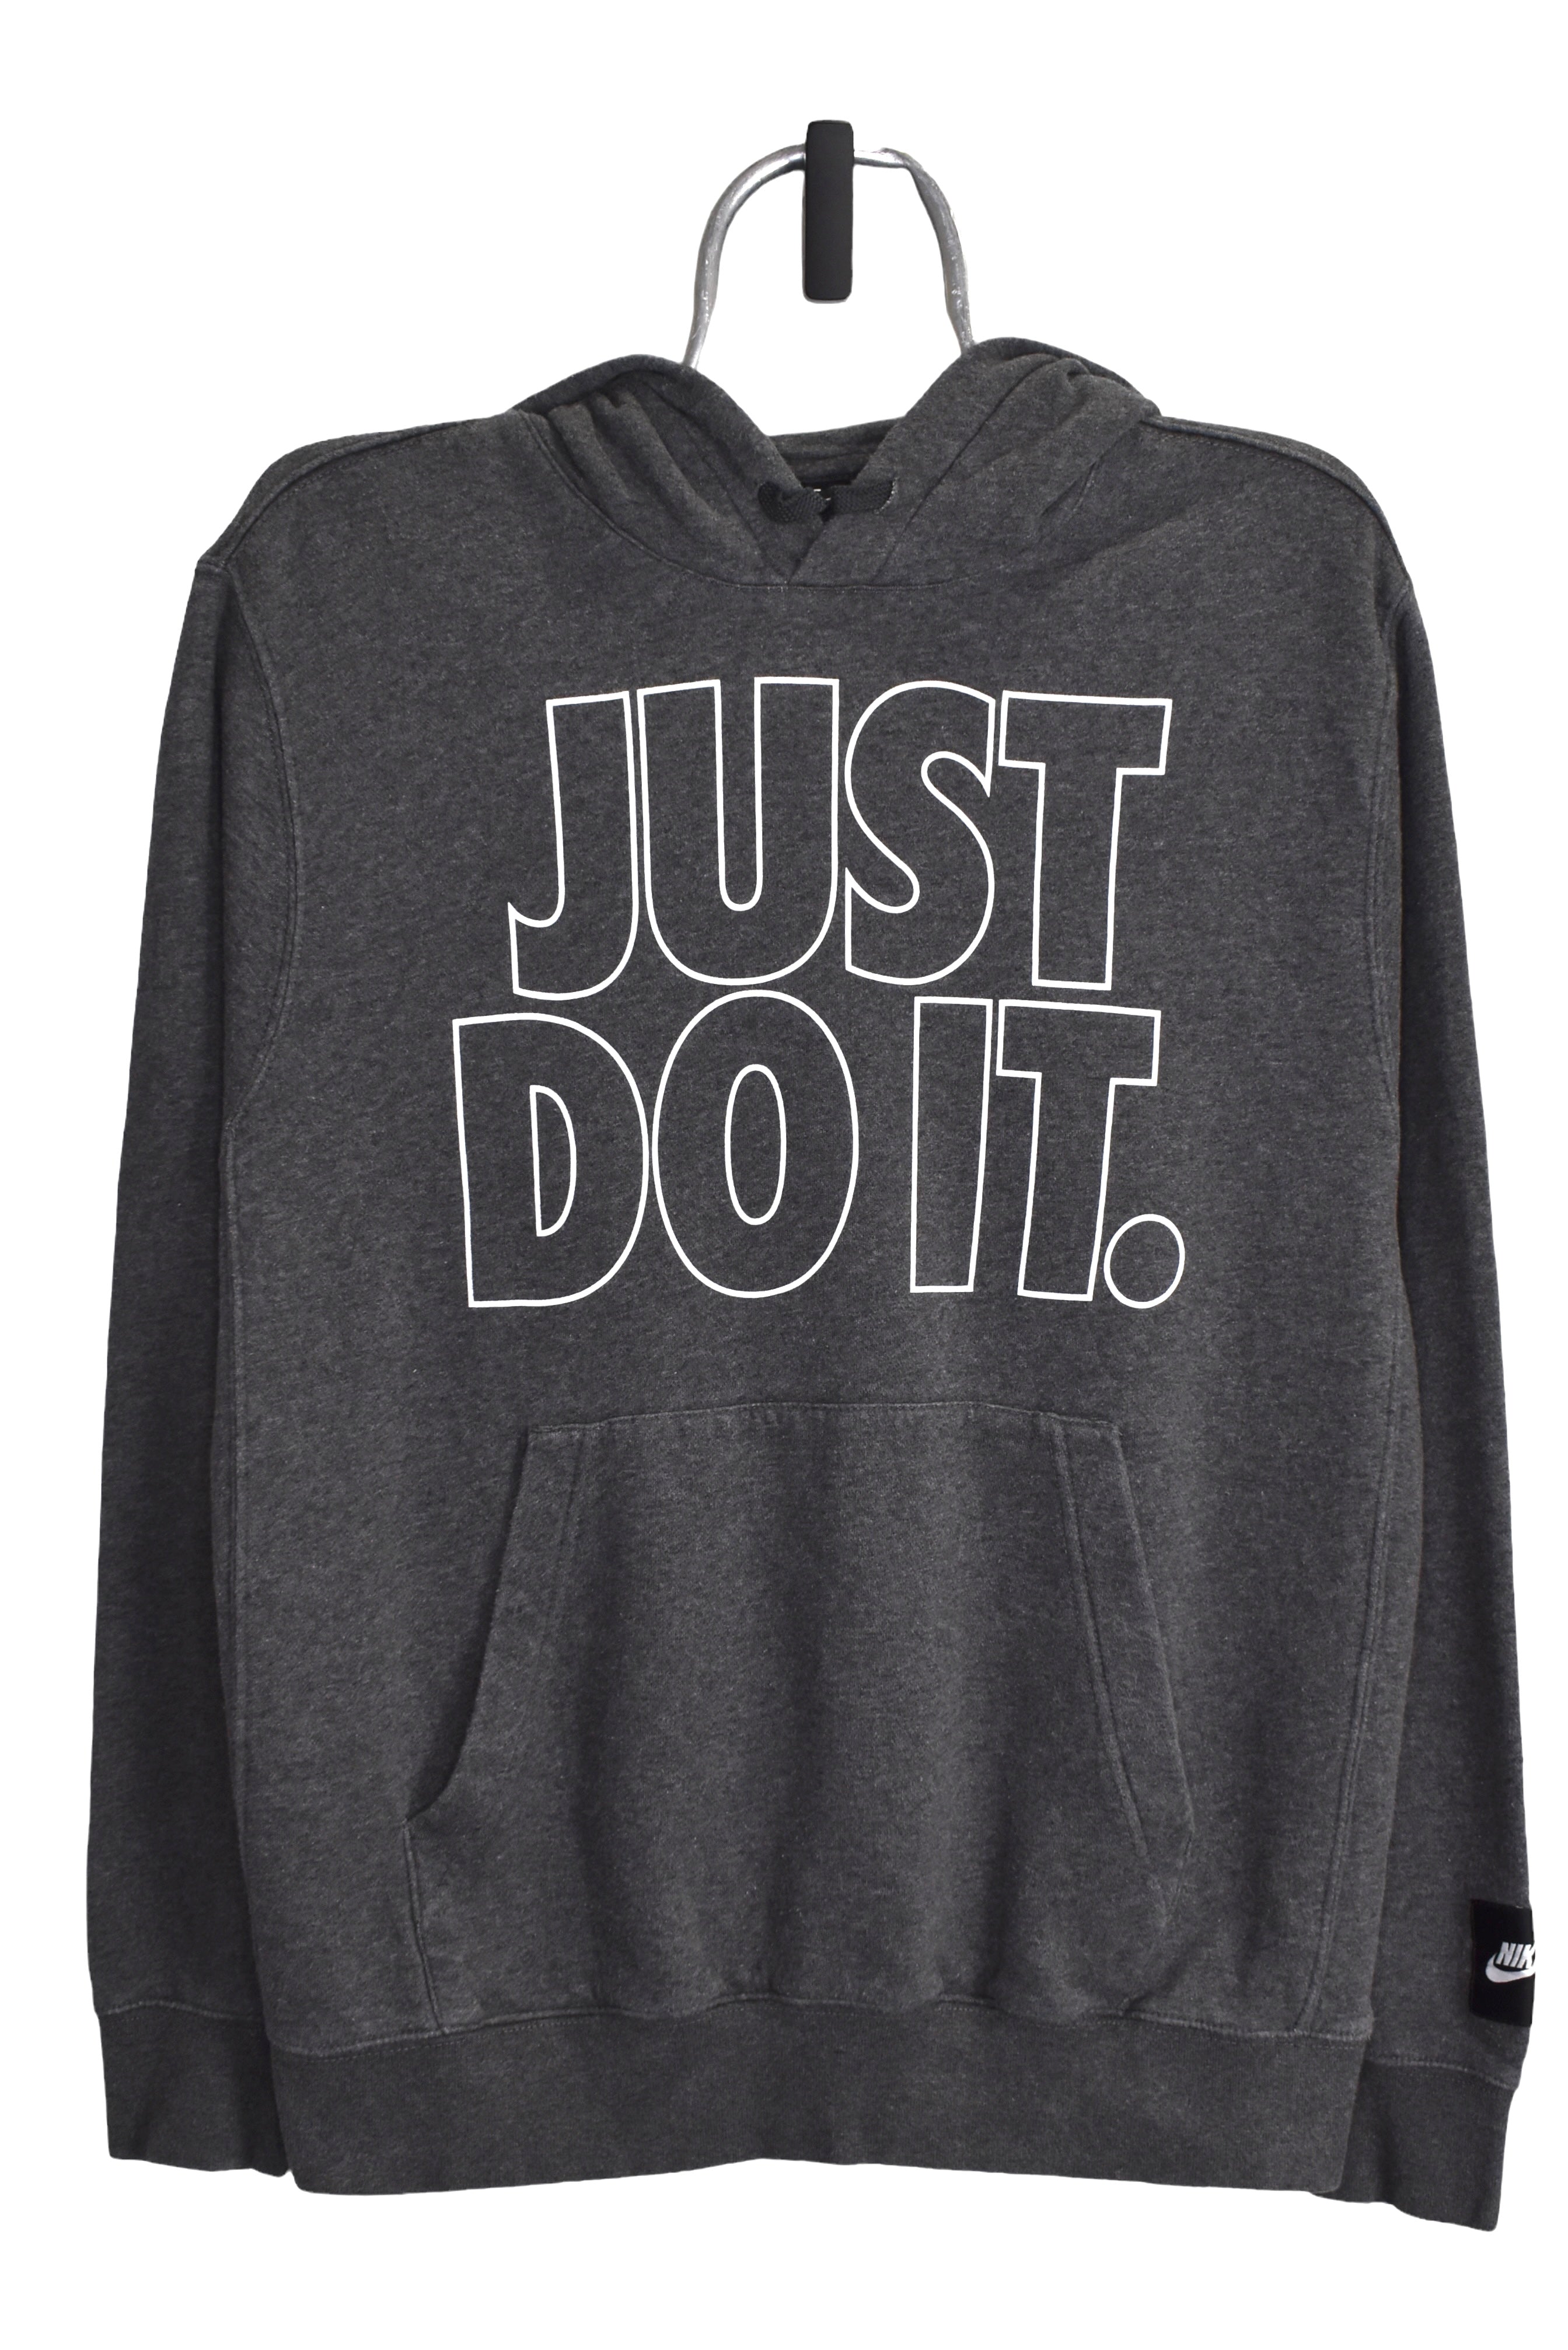 Modern Nike hoodie (L), grey graphic sweatshirt